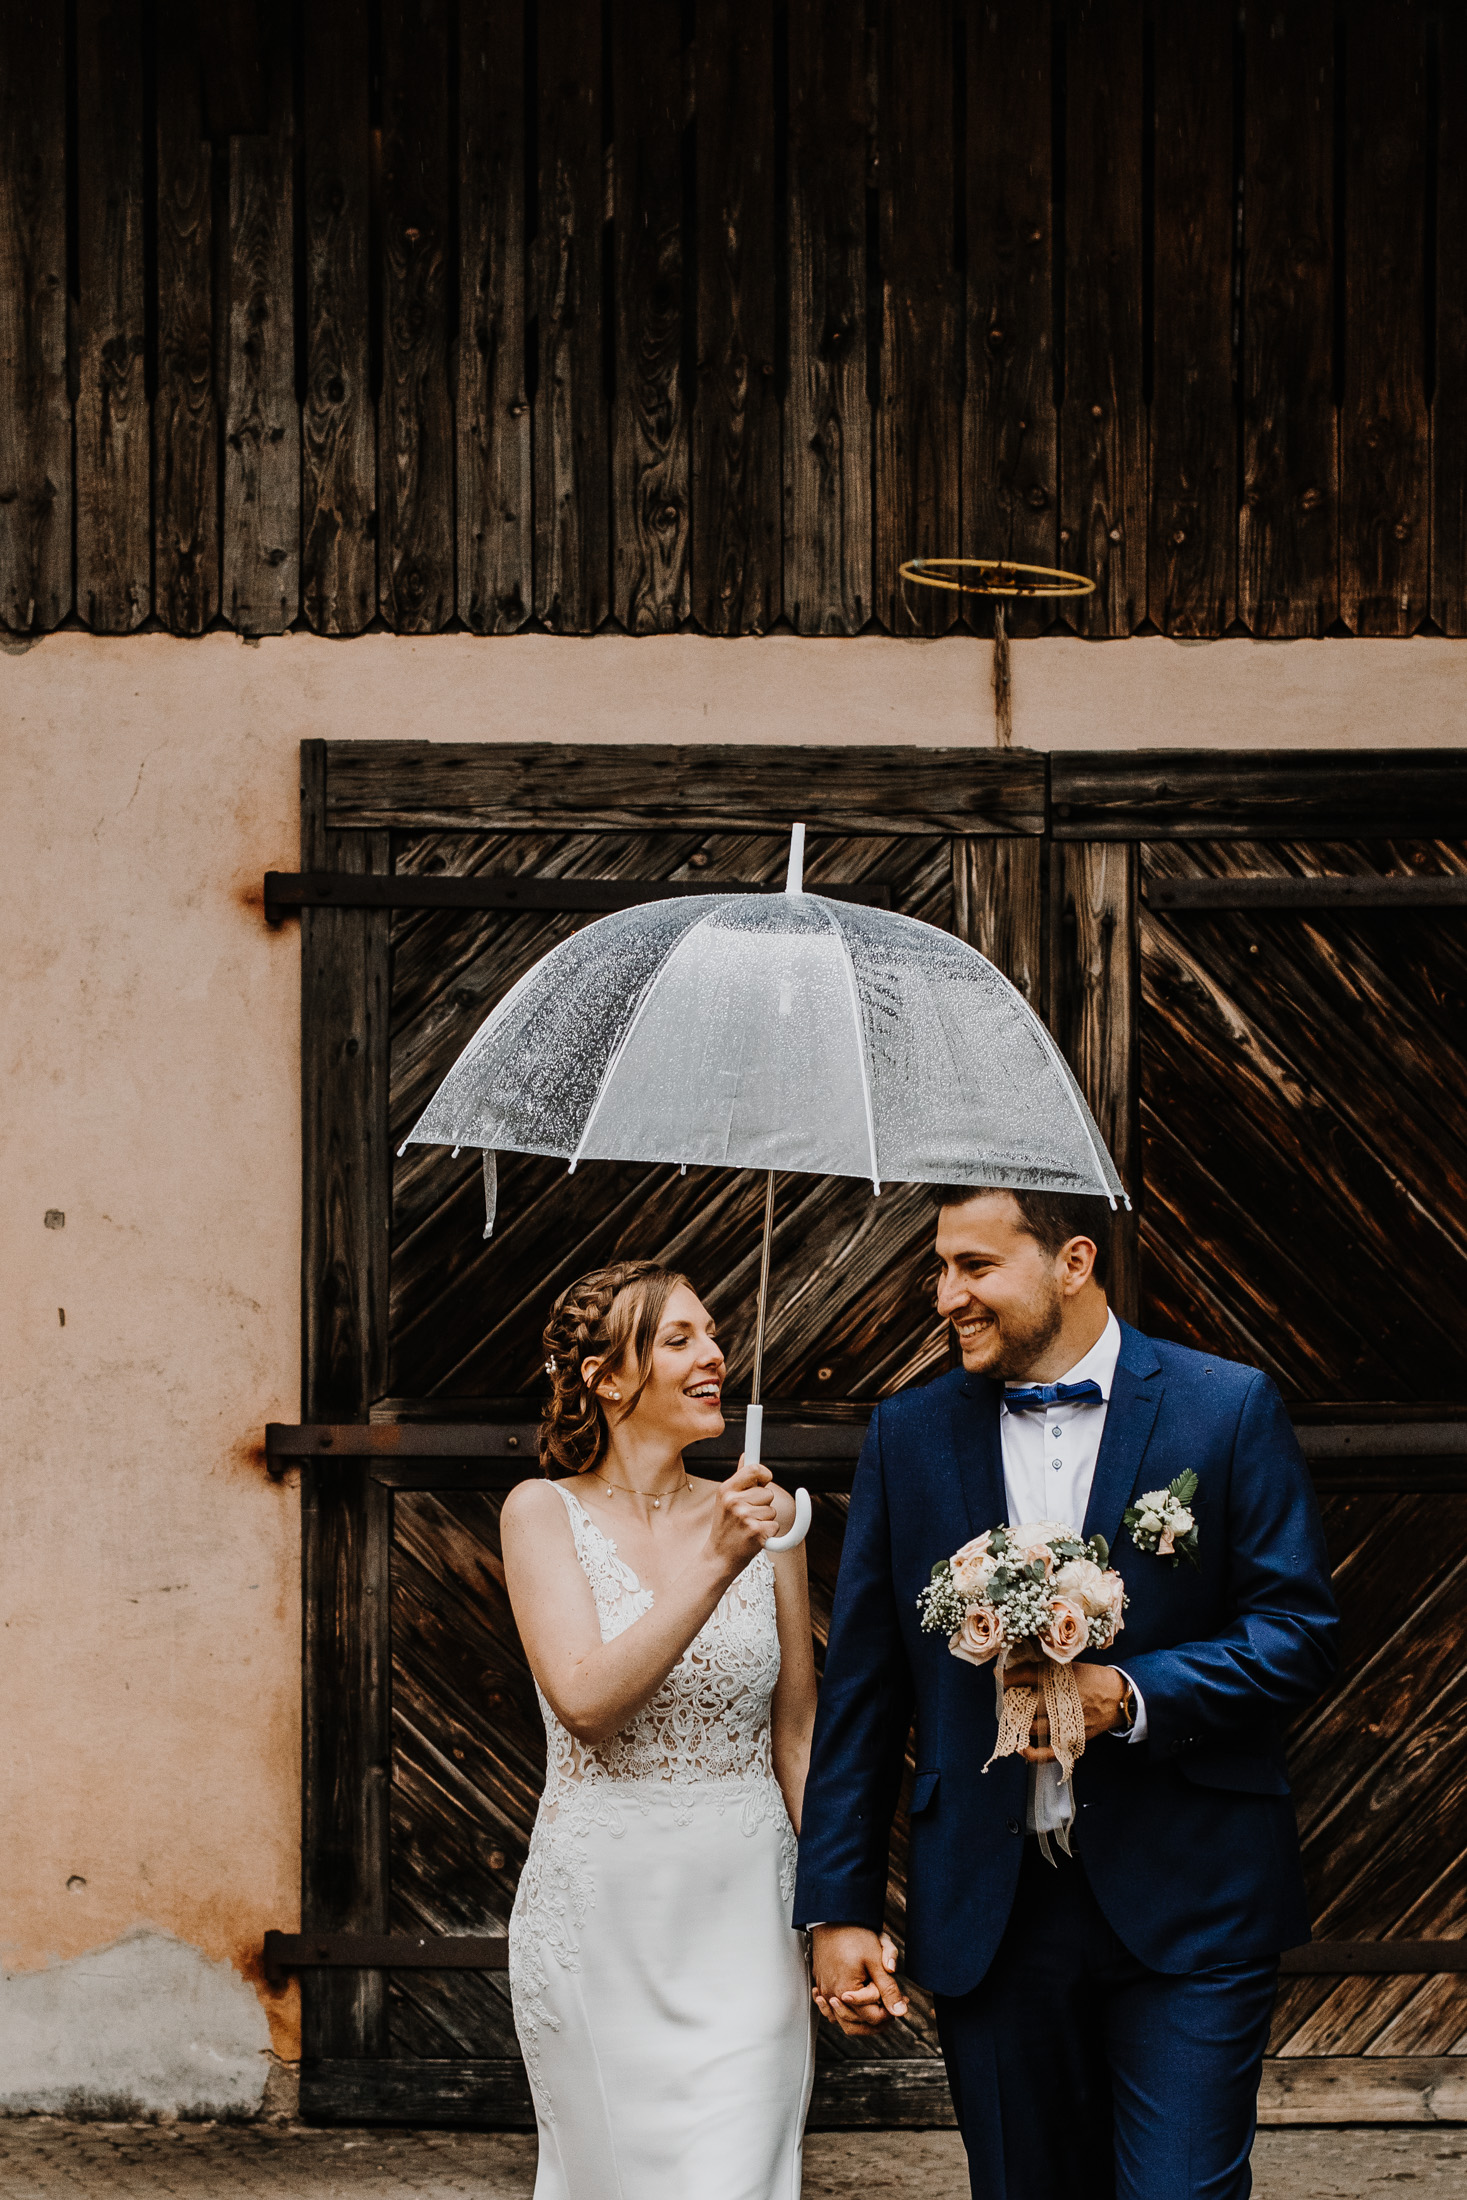 les mariés marchent sous la pluie, dans une ancienne cour, sous un parapluie transparent